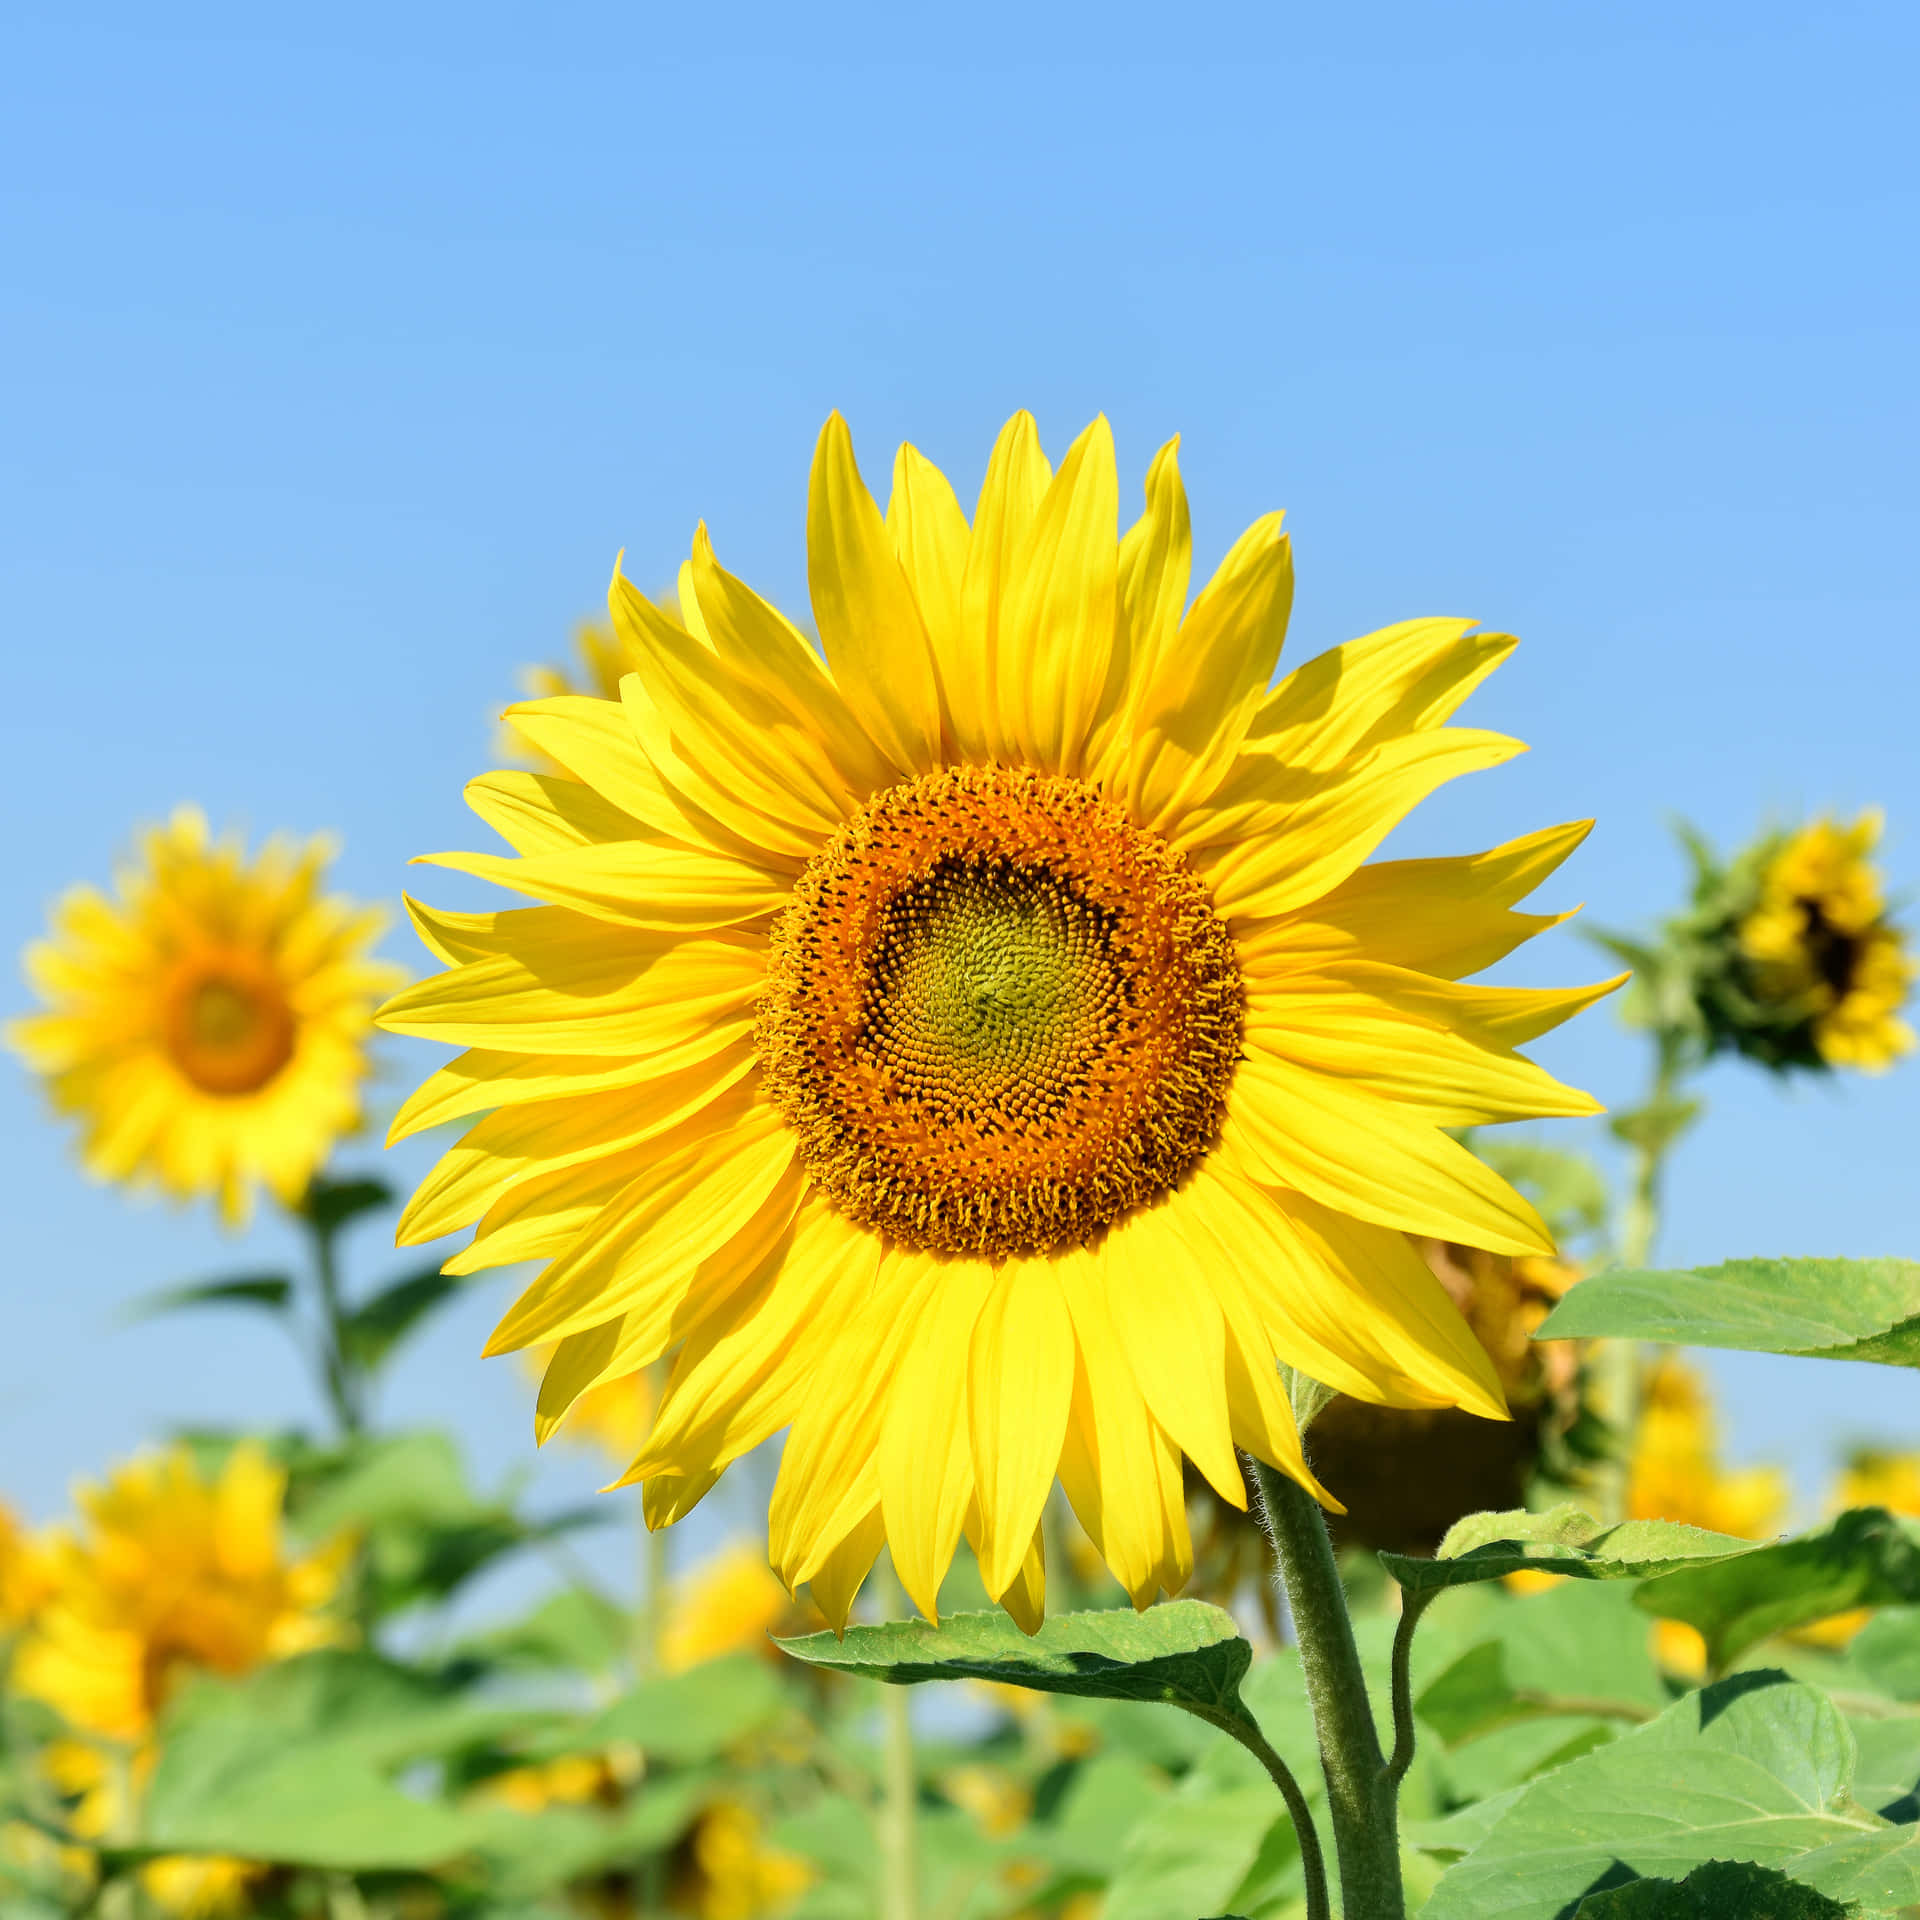 "A stunning yellow sunflower stands tall amidst a blooming garden."